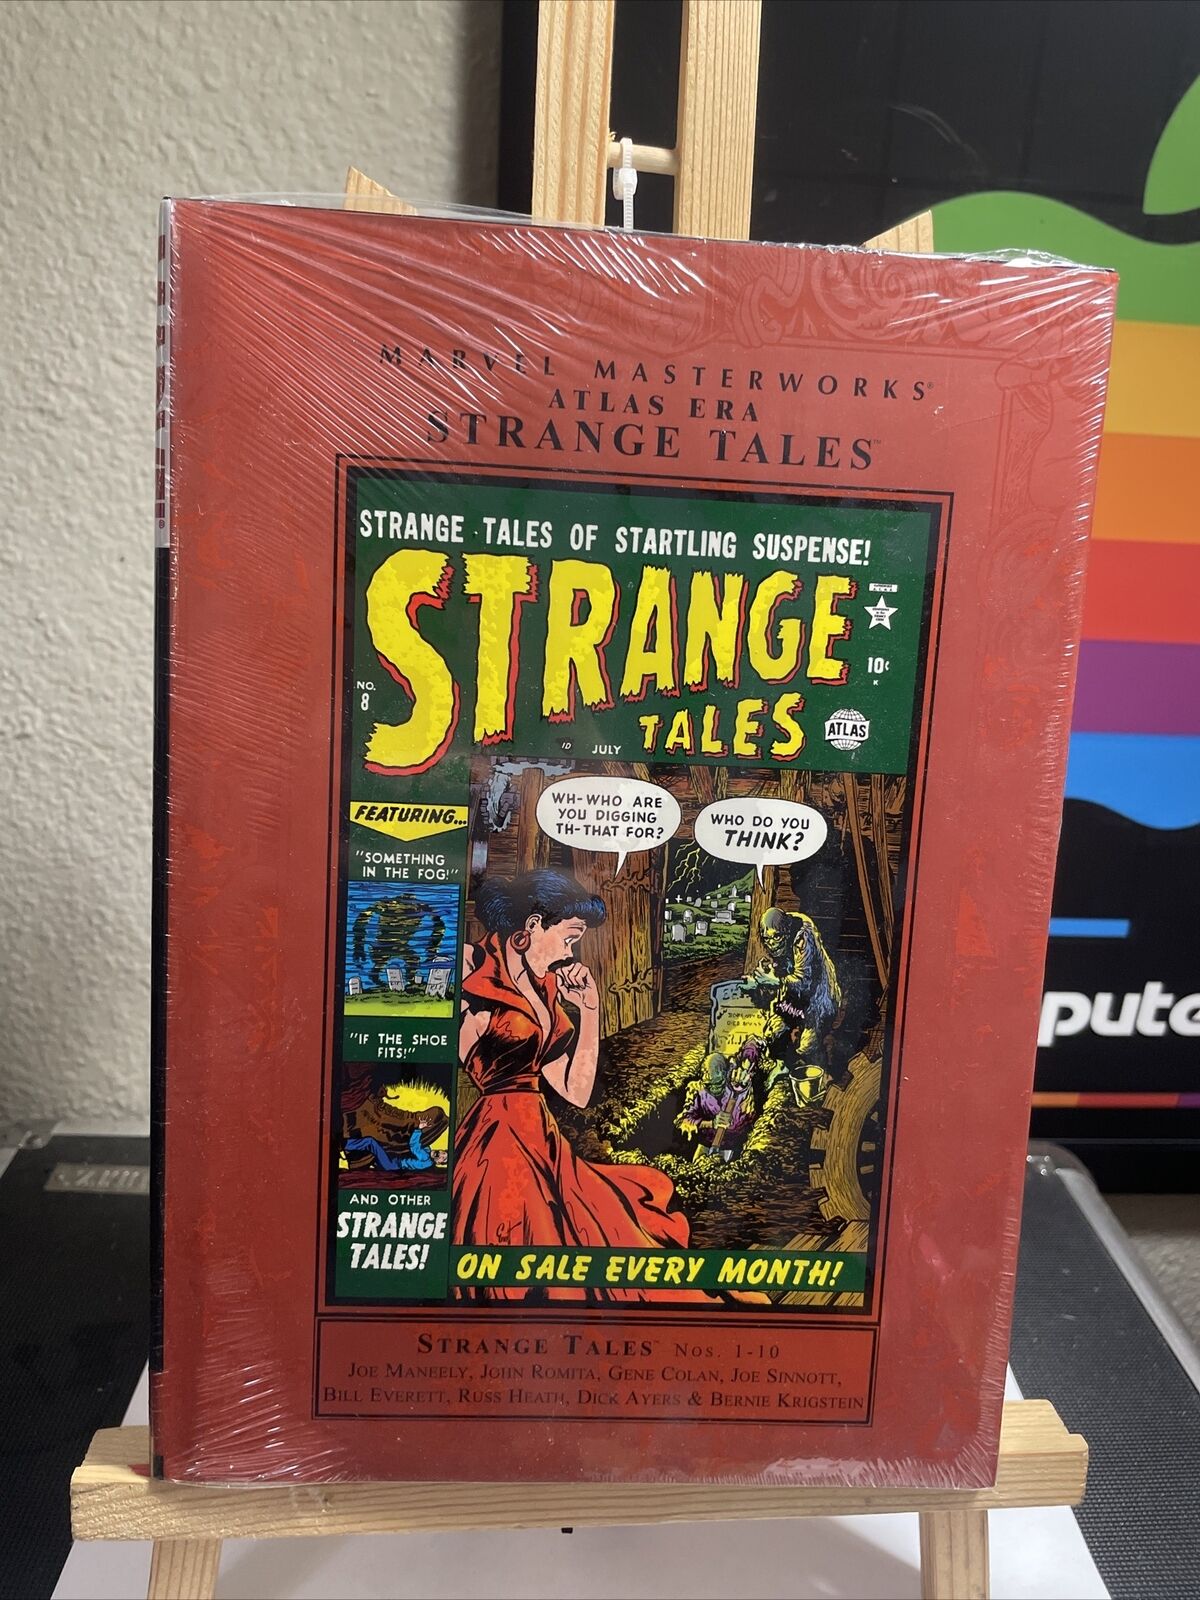 Marvel Masterworks: Atlas Era Strange Tales #1 (Marvel Comics October 2007)